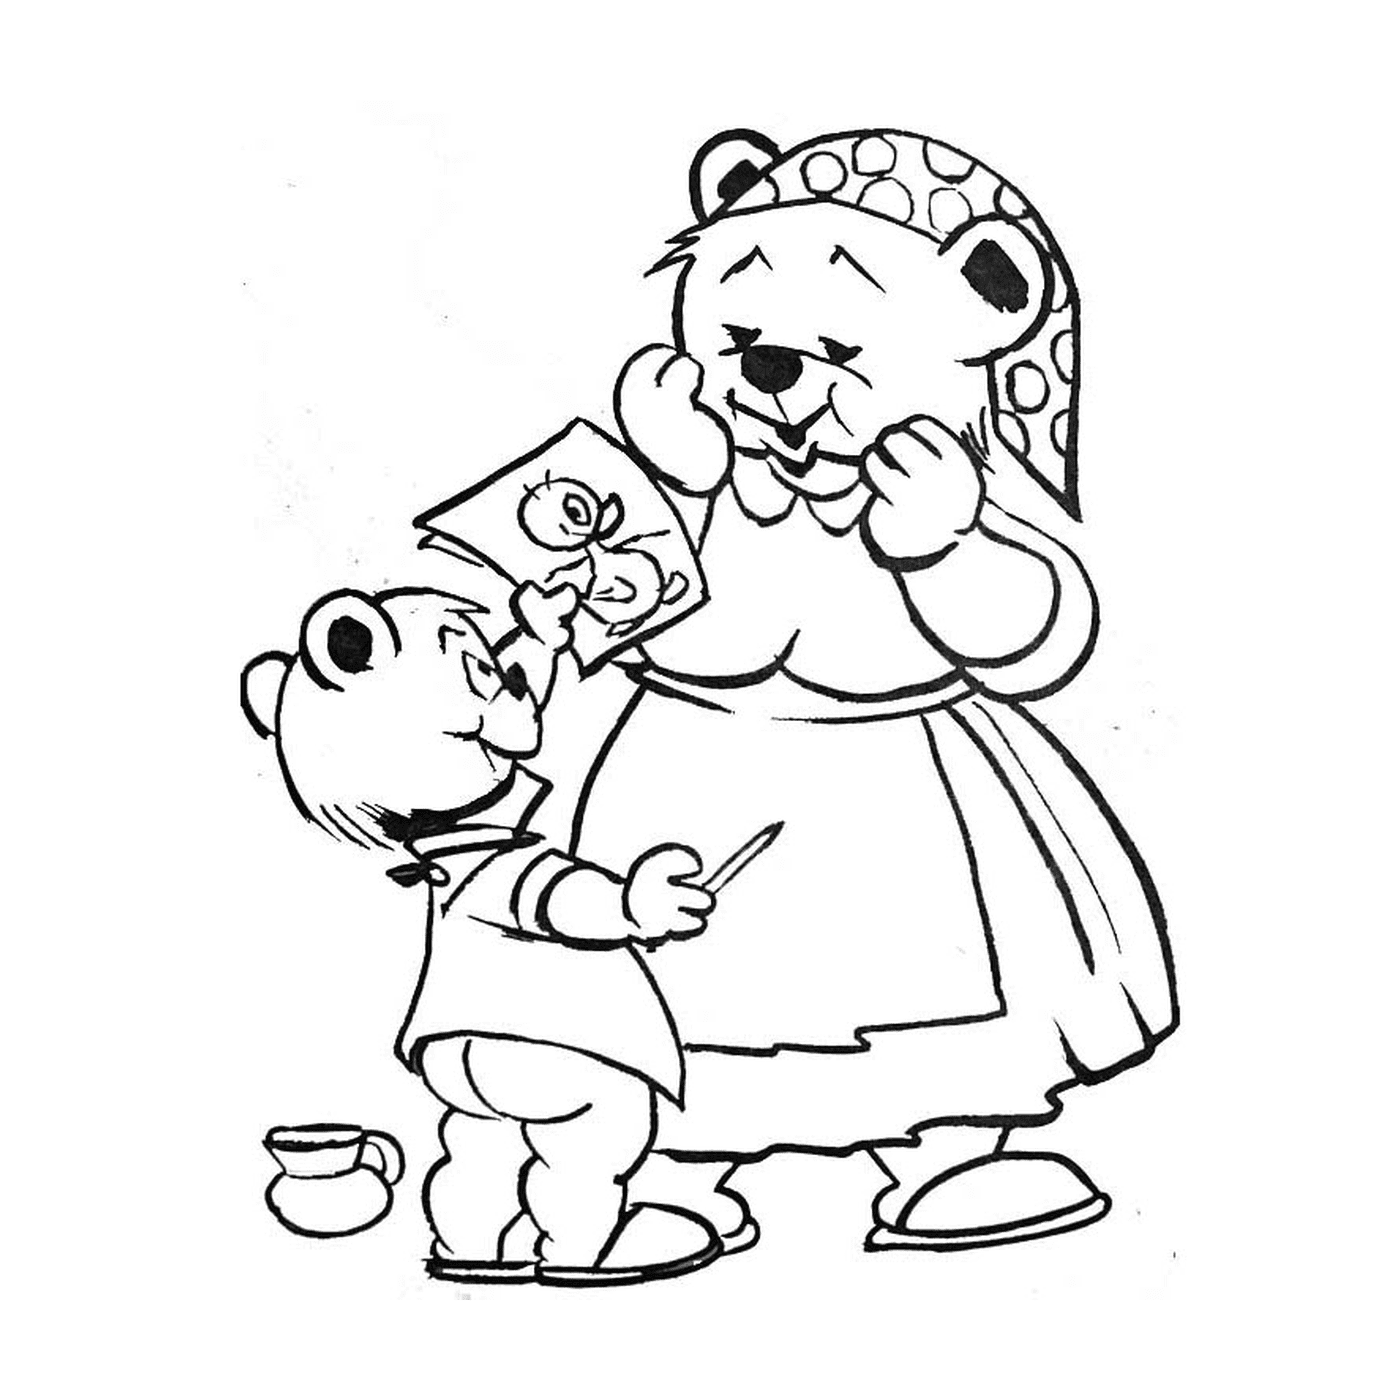  an adult bear and a cub 